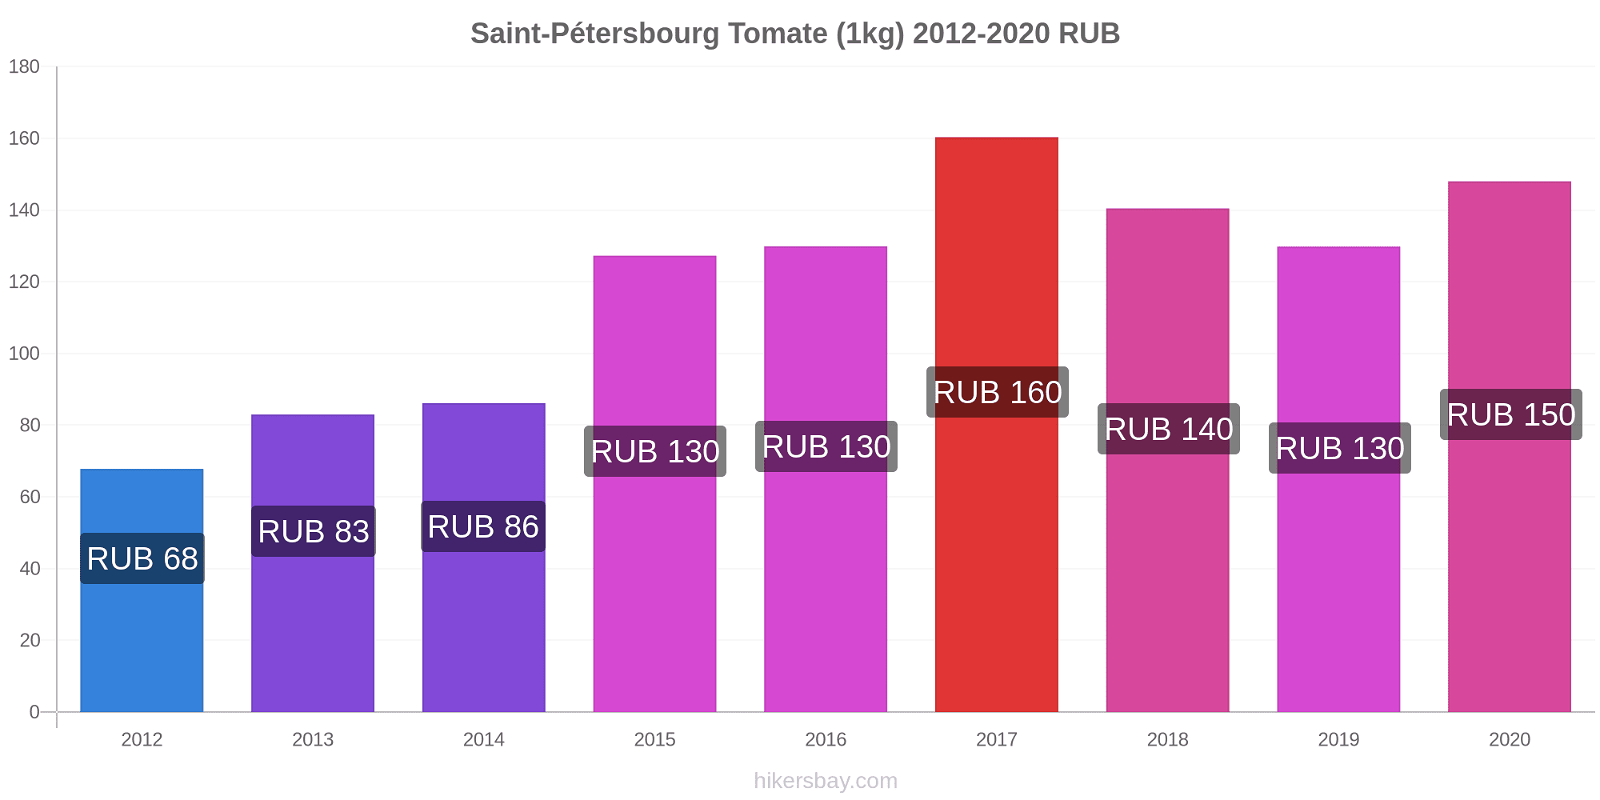 Saint-Pétersbourg changements de prix Tomate (1kg) hikersbay.com